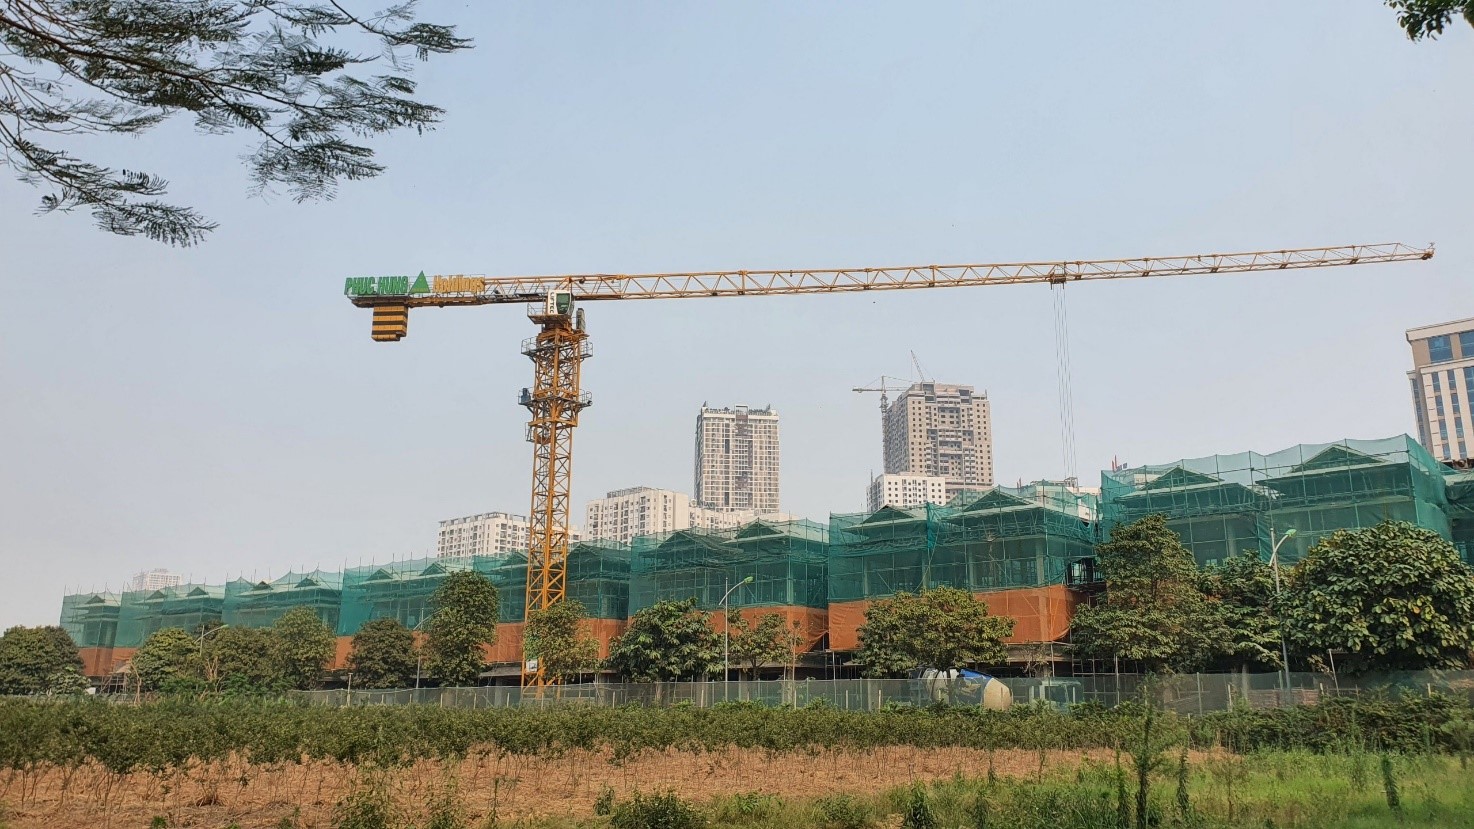 Toàn cảnh dự án khu Đô thị mới Dương Nội - 32 căn Biệt thự lô K07 – Phân khu A đang gấp rút thi công các hạng mục hoàn thiện